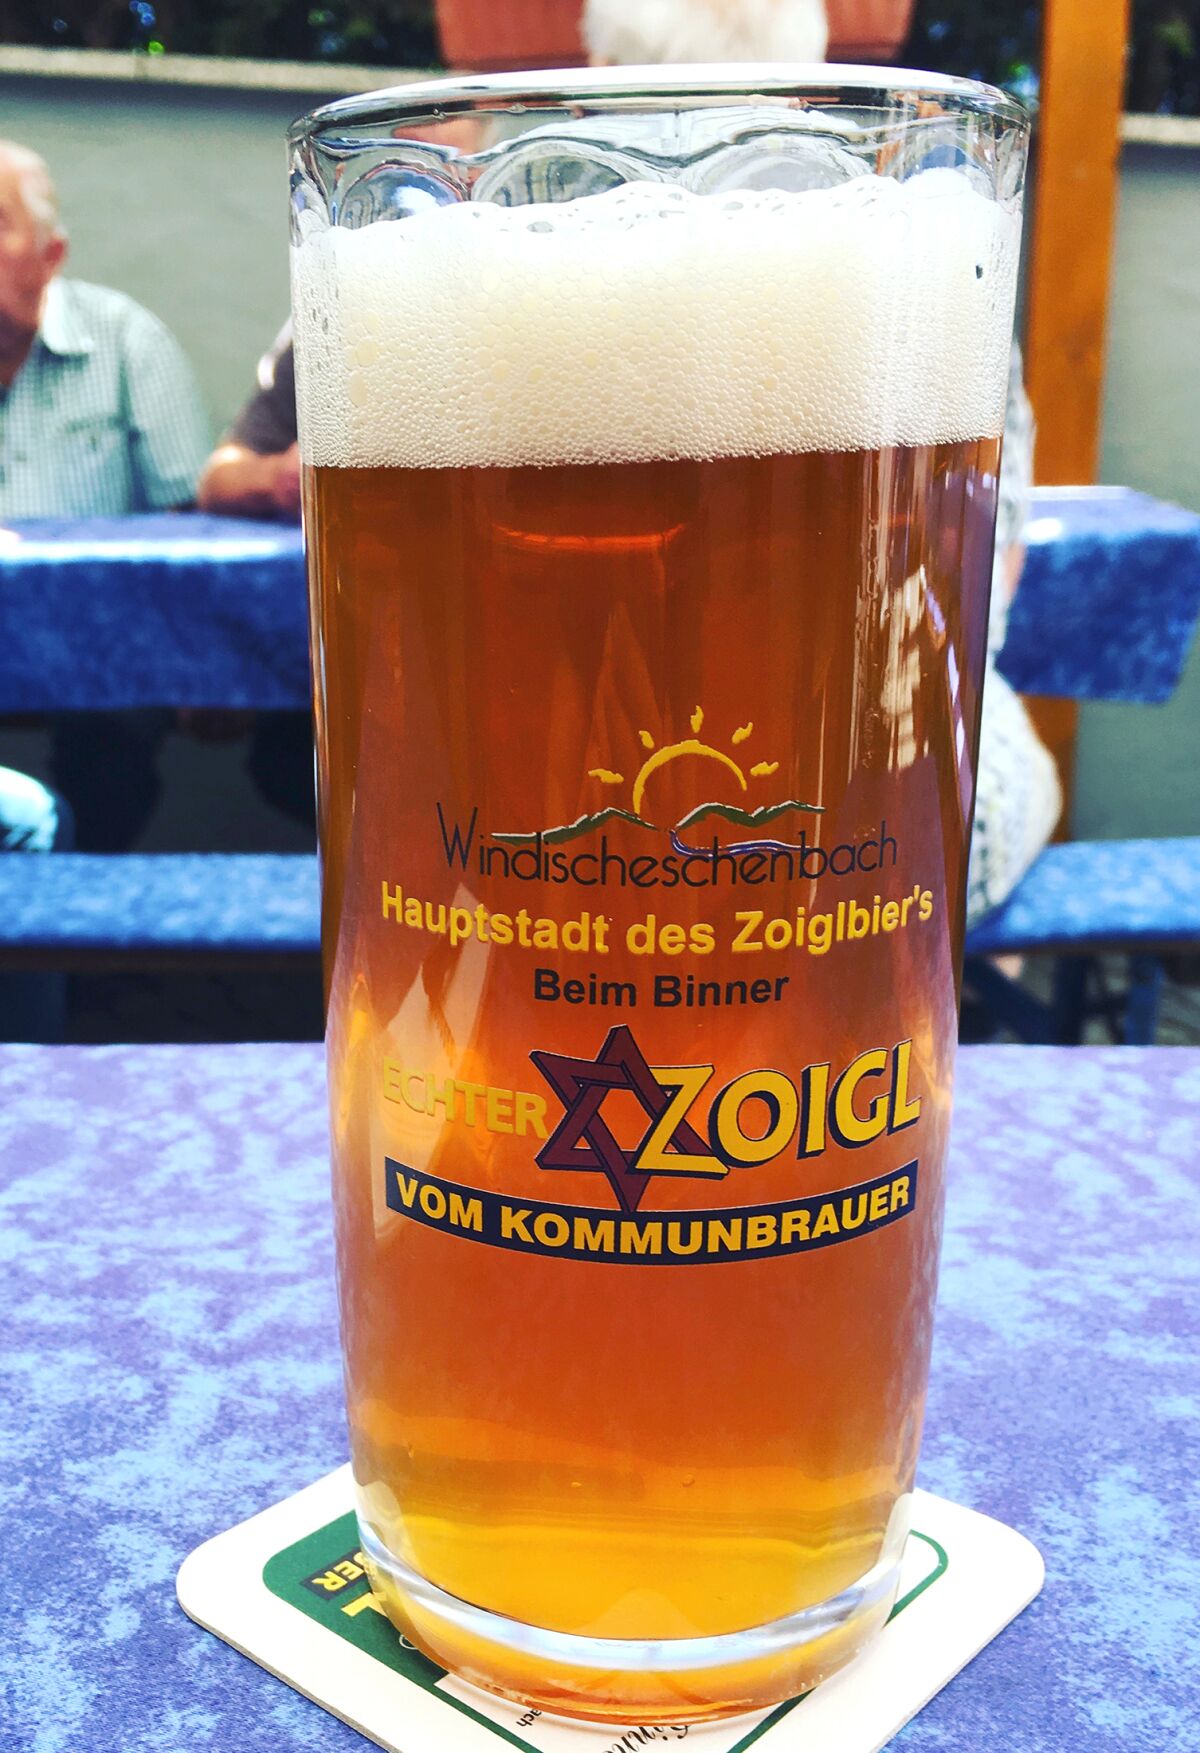 A glass of Zoigl beer at Beim Binner.